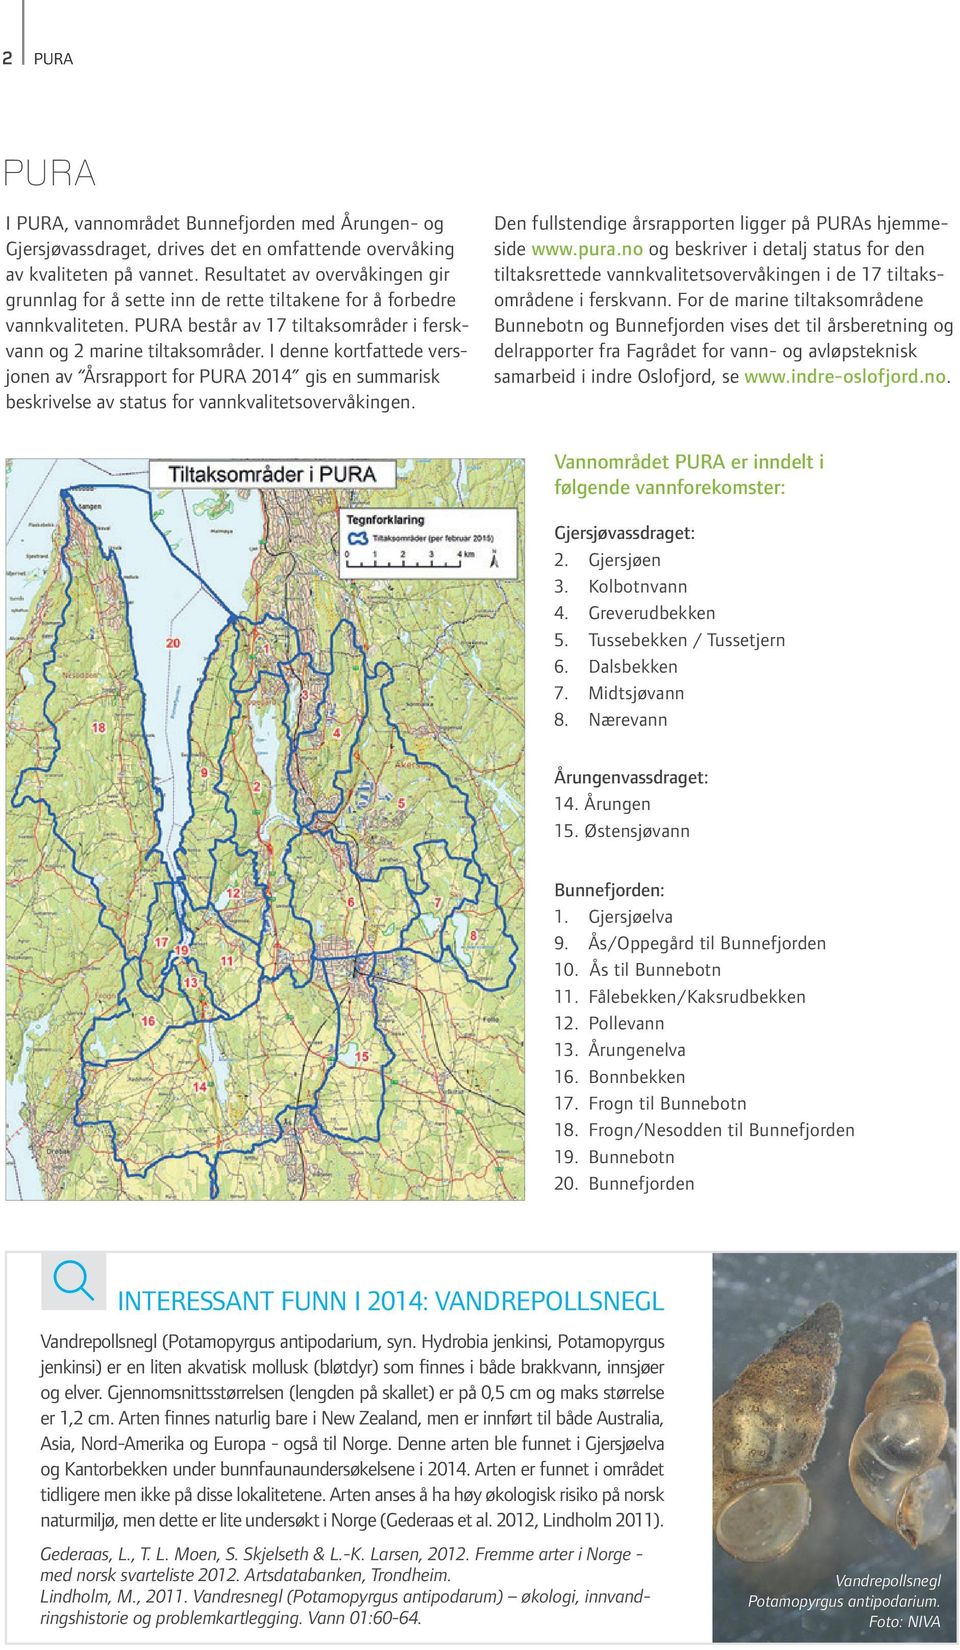 I denne kortfattede versjonen av Årsrapport for PURA 2014 gis en summarisk beskrivelse av status for vannkvalitets overvåkingen. Den fullstendige årsrapporten ligger på PURAs hjemmeside www.pura.